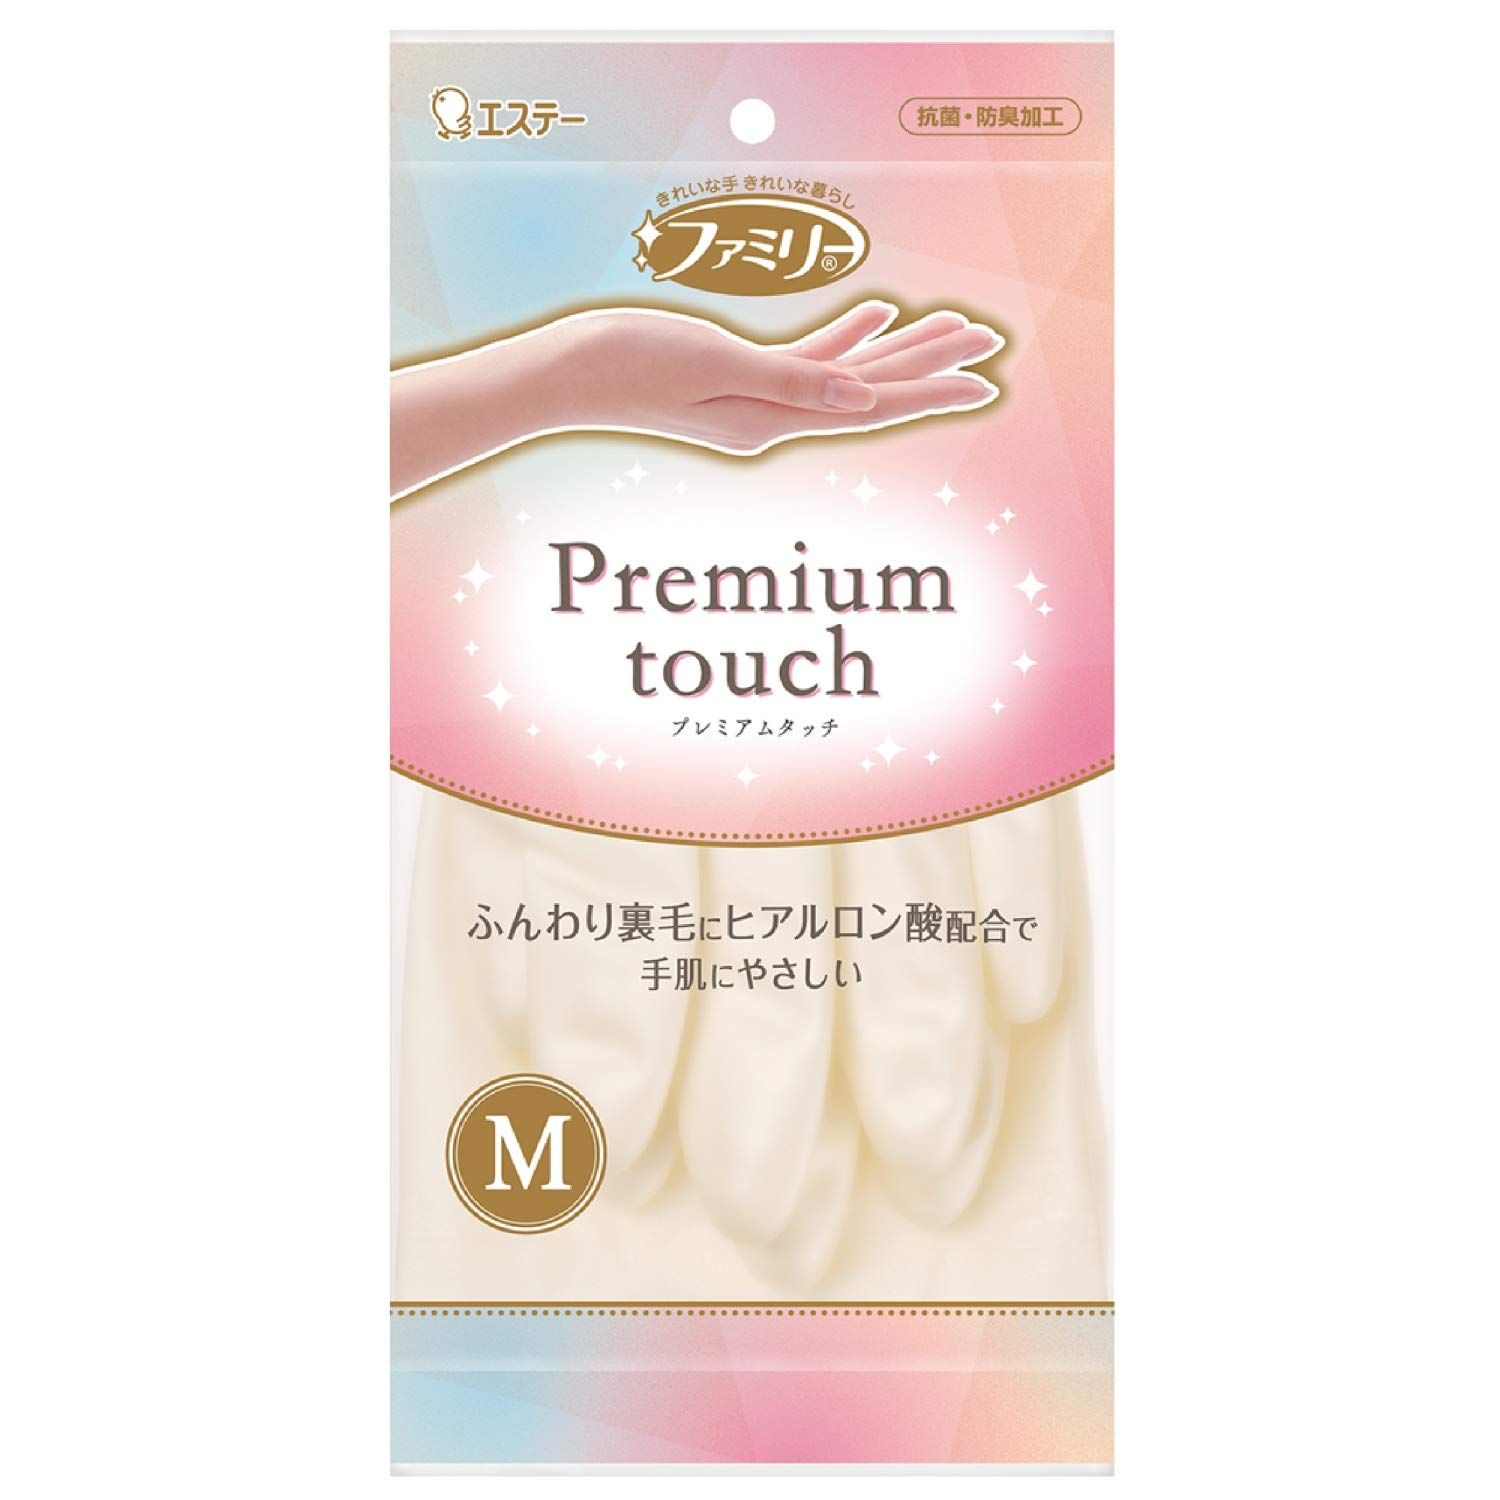 ST Family Premium Touch Перчатки виниловые для бытовых и хозяйственных нужд средней толщины пропитаны гиалуроновой кислотой размер M